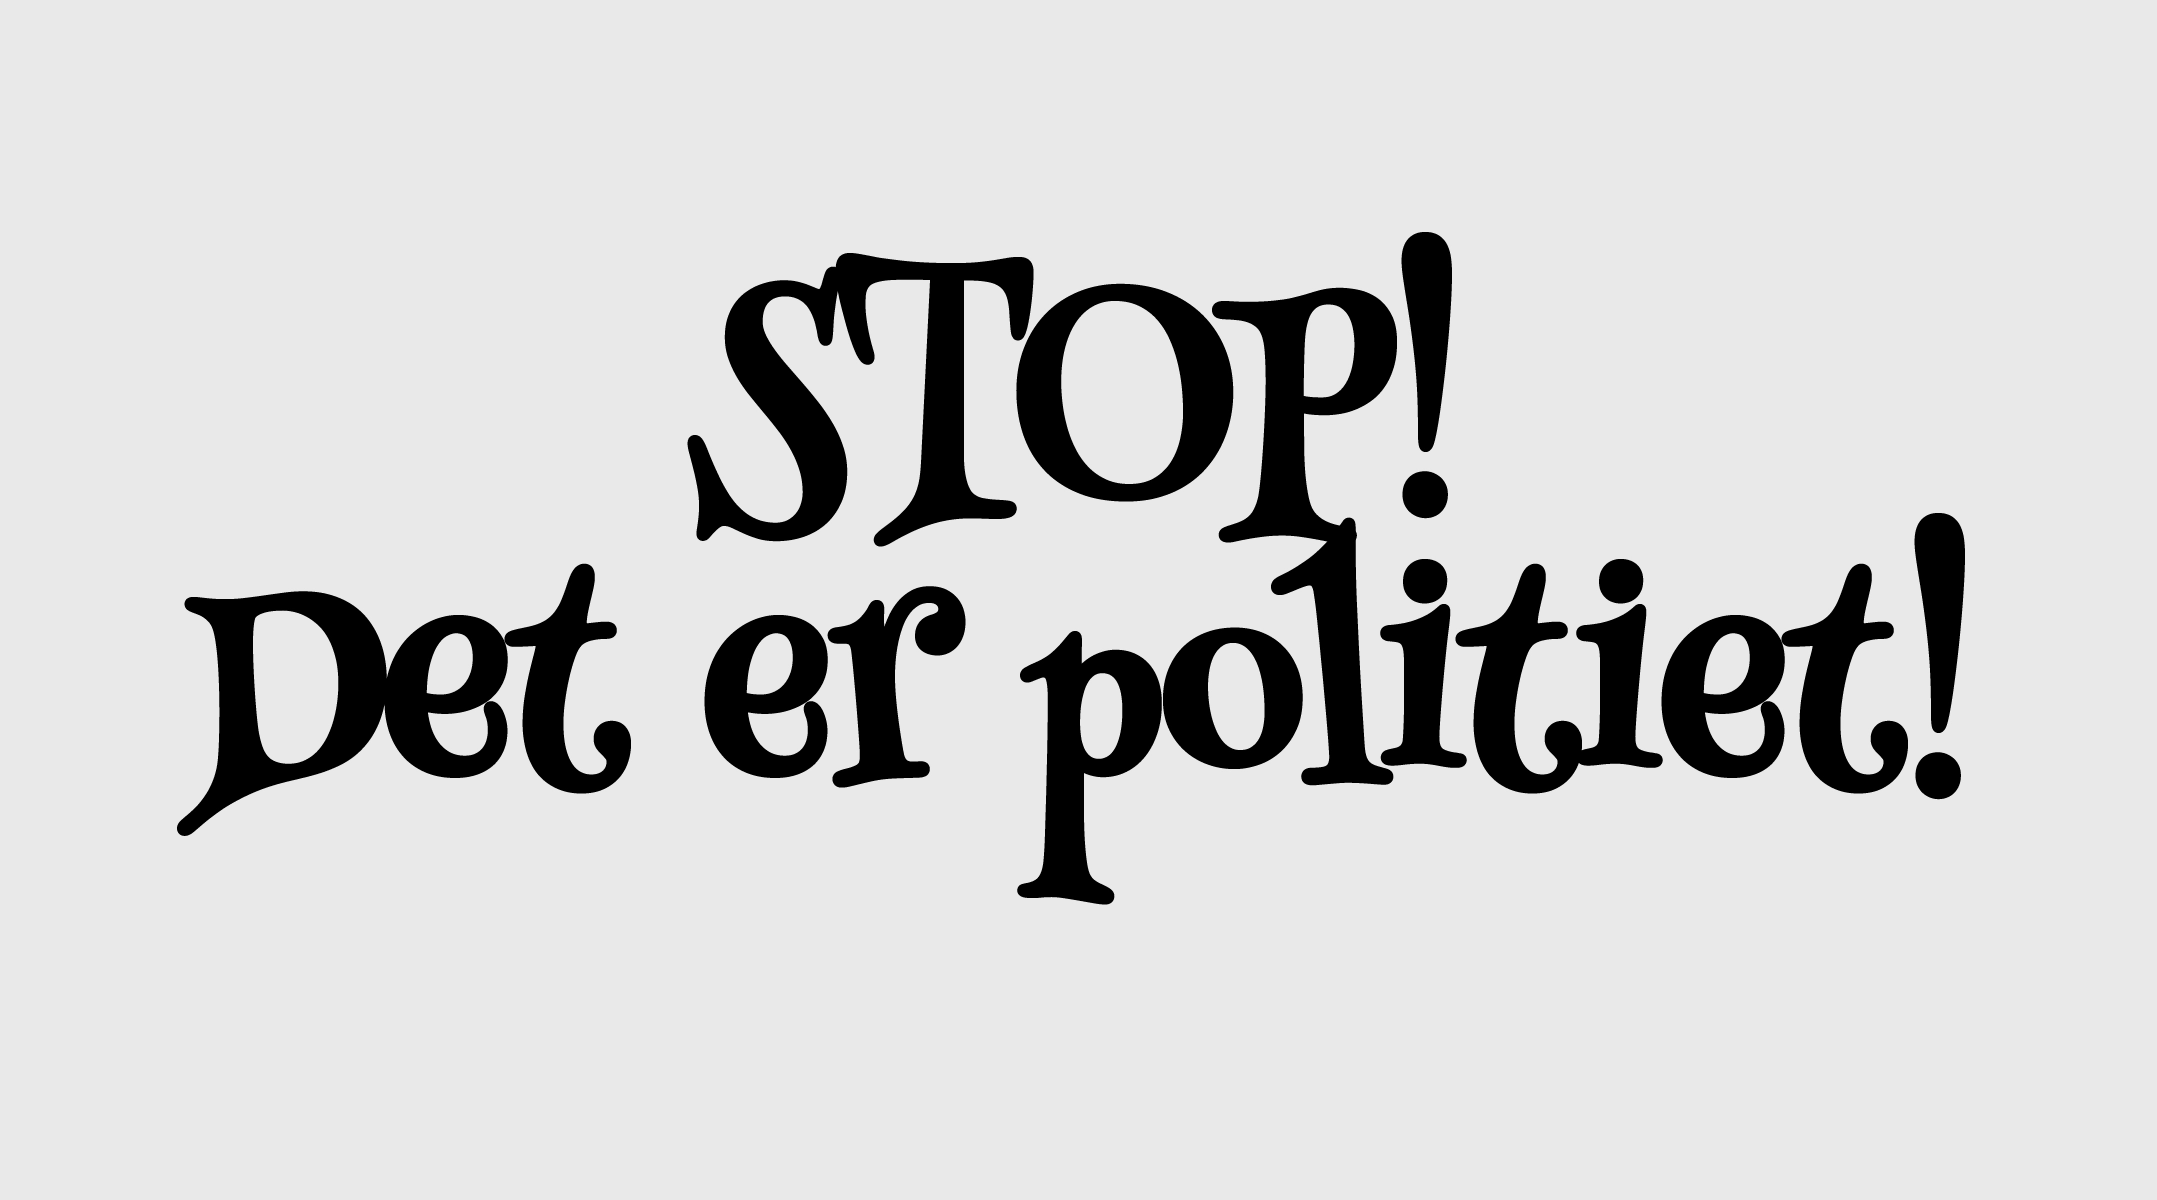 Tekst der viser "STOP! Det er politiet!" i en komisk skrifttype.